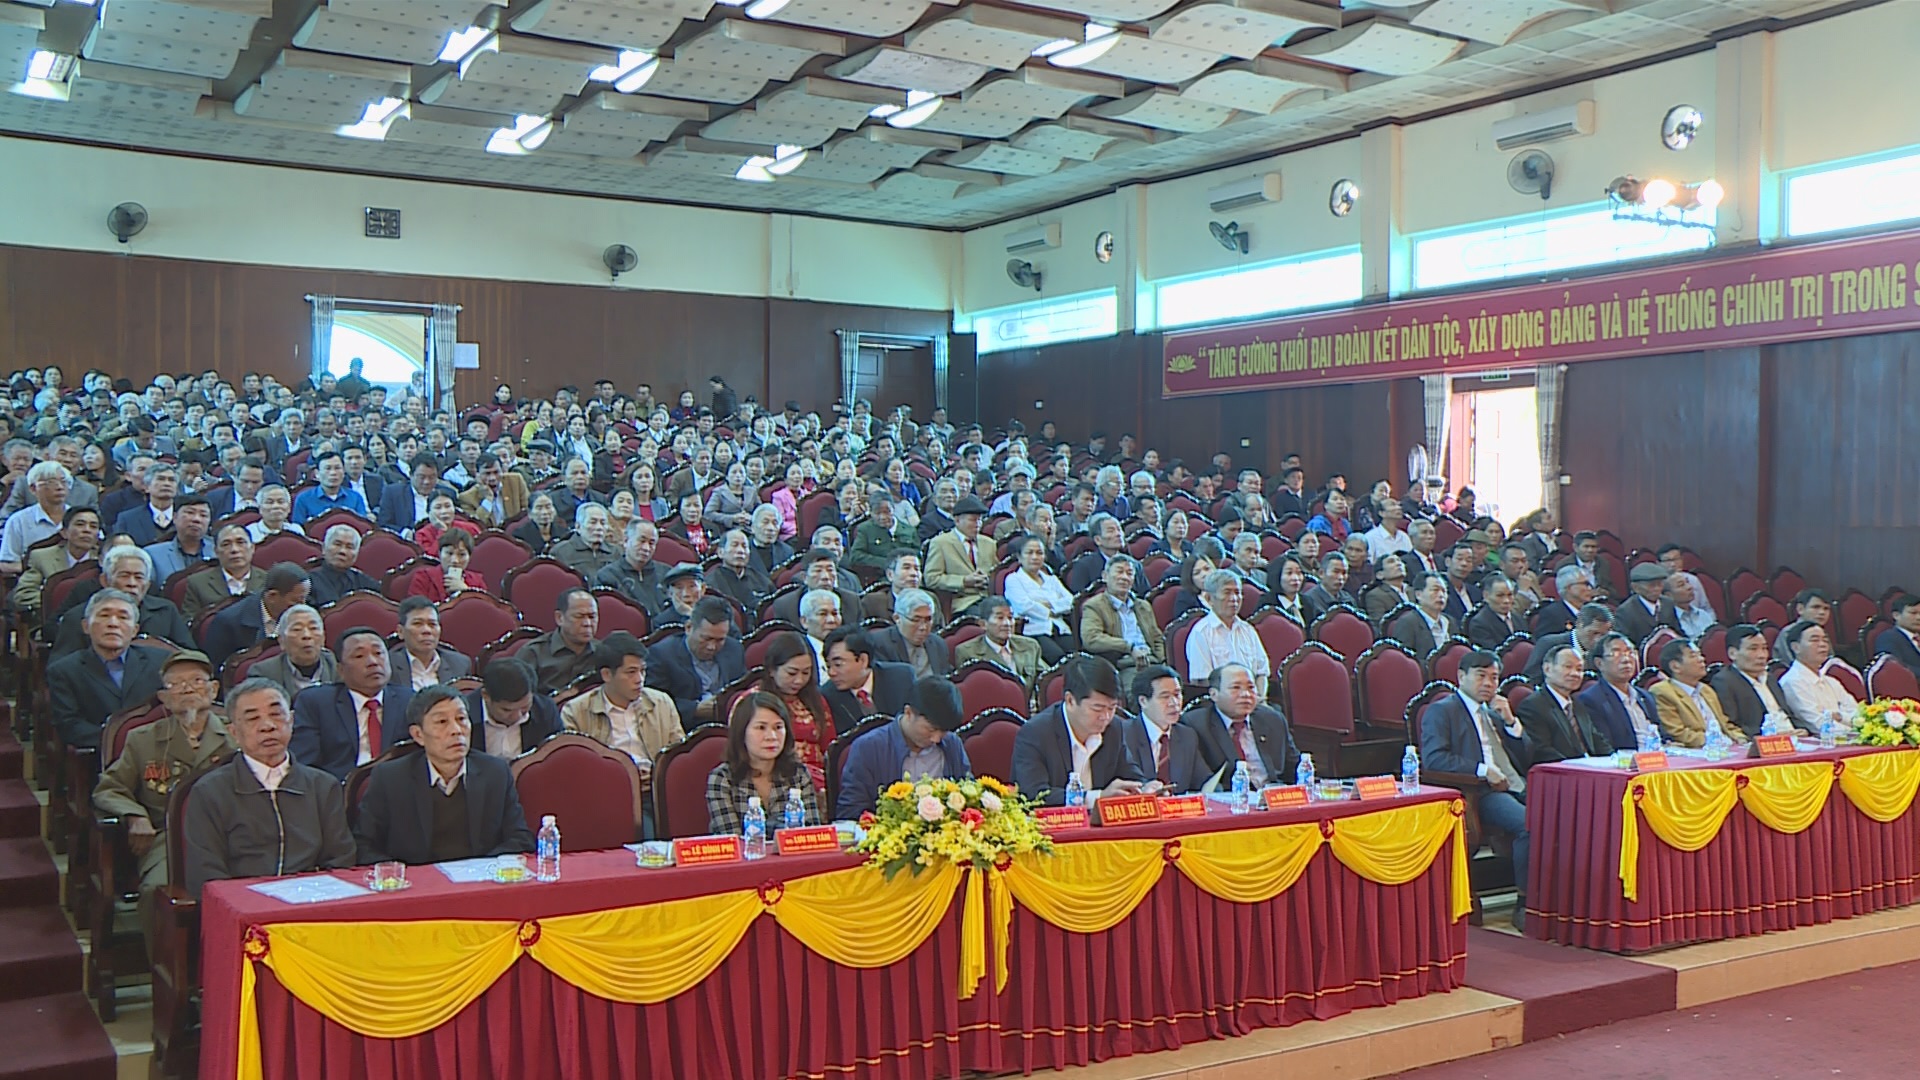 Đảng bộ Thị trấn Cẩm Xuyên kỷ niệm 90 năm ngày thành lập Đảng cộng sản Việt Nam